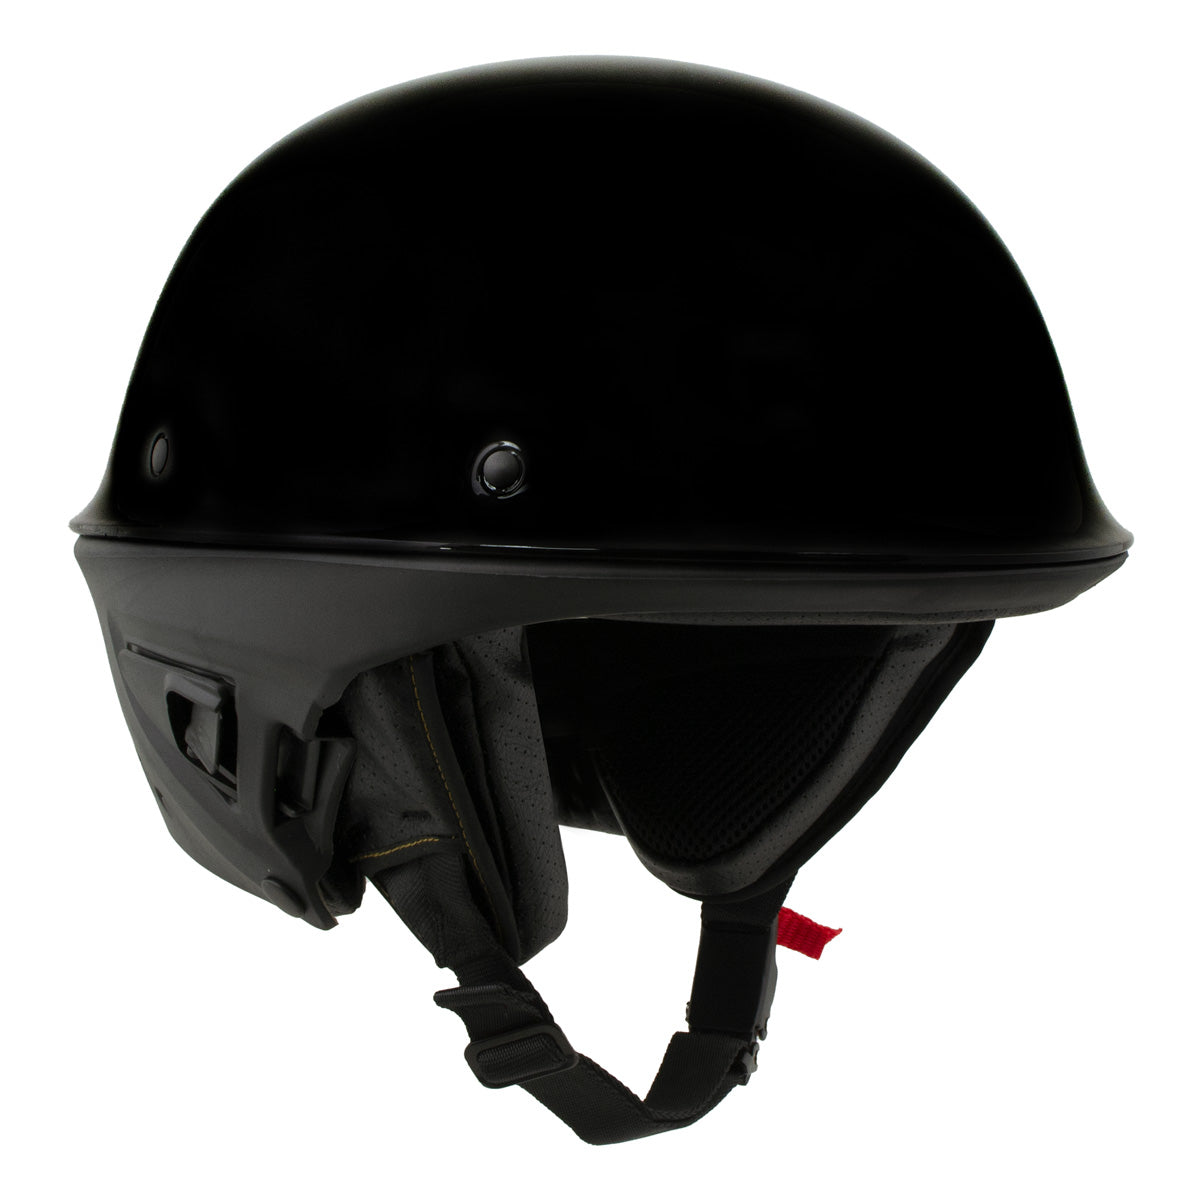 Milwaukee Helmets MPH9831DOT 'Rascal' 3/4 Open Face Gloss Black 2 in 1 Motorcycle Helmet for Men and Women Biker